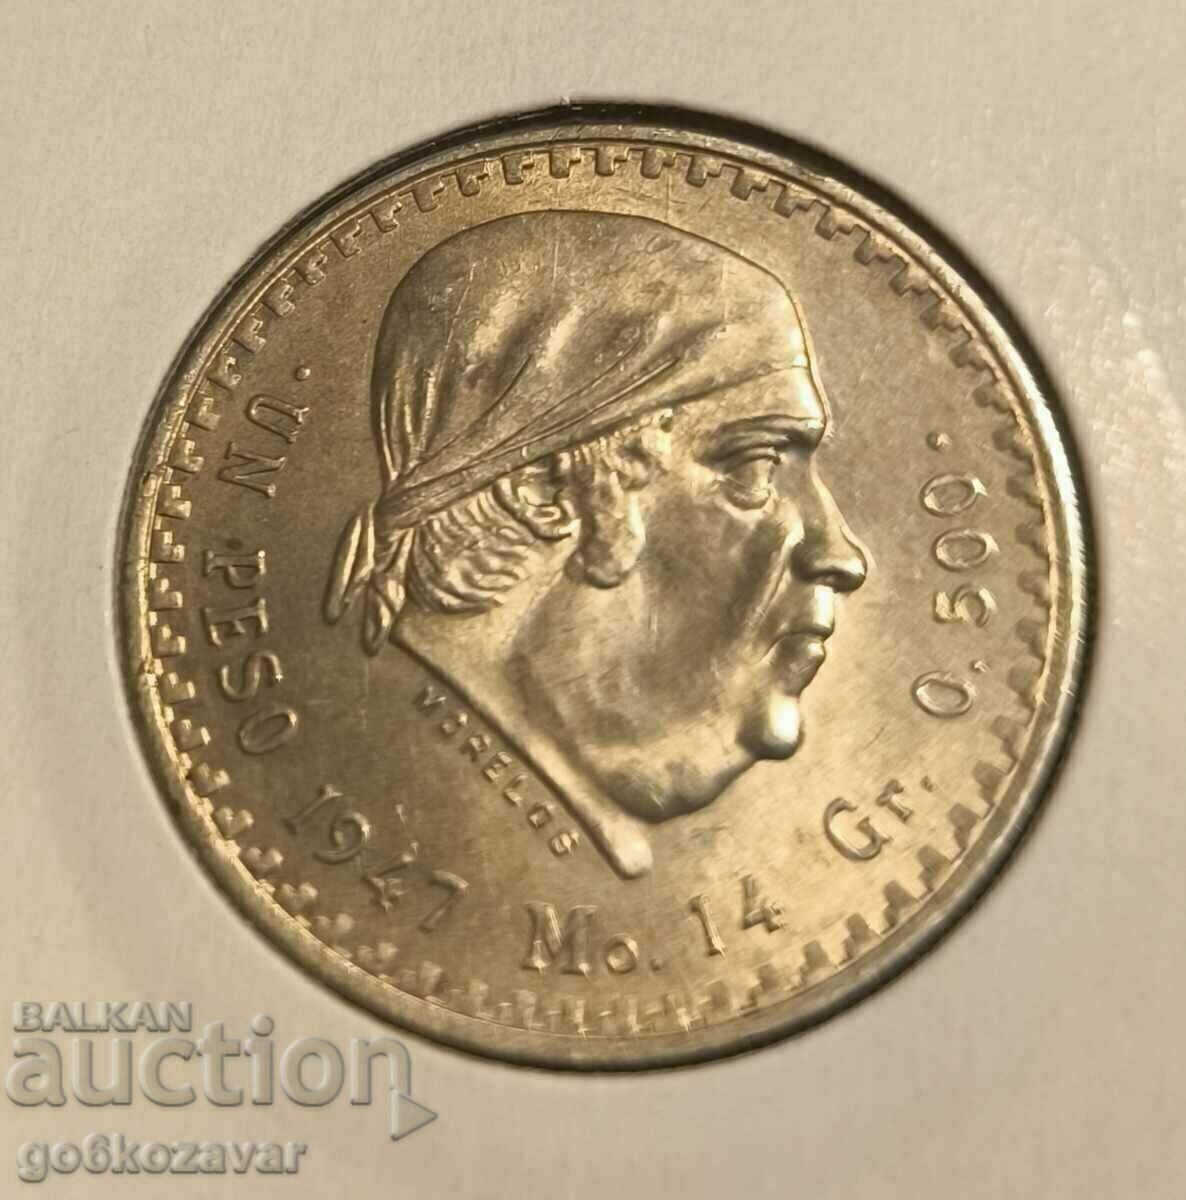 Mexico 1 peso 1947 Silver! UNC!